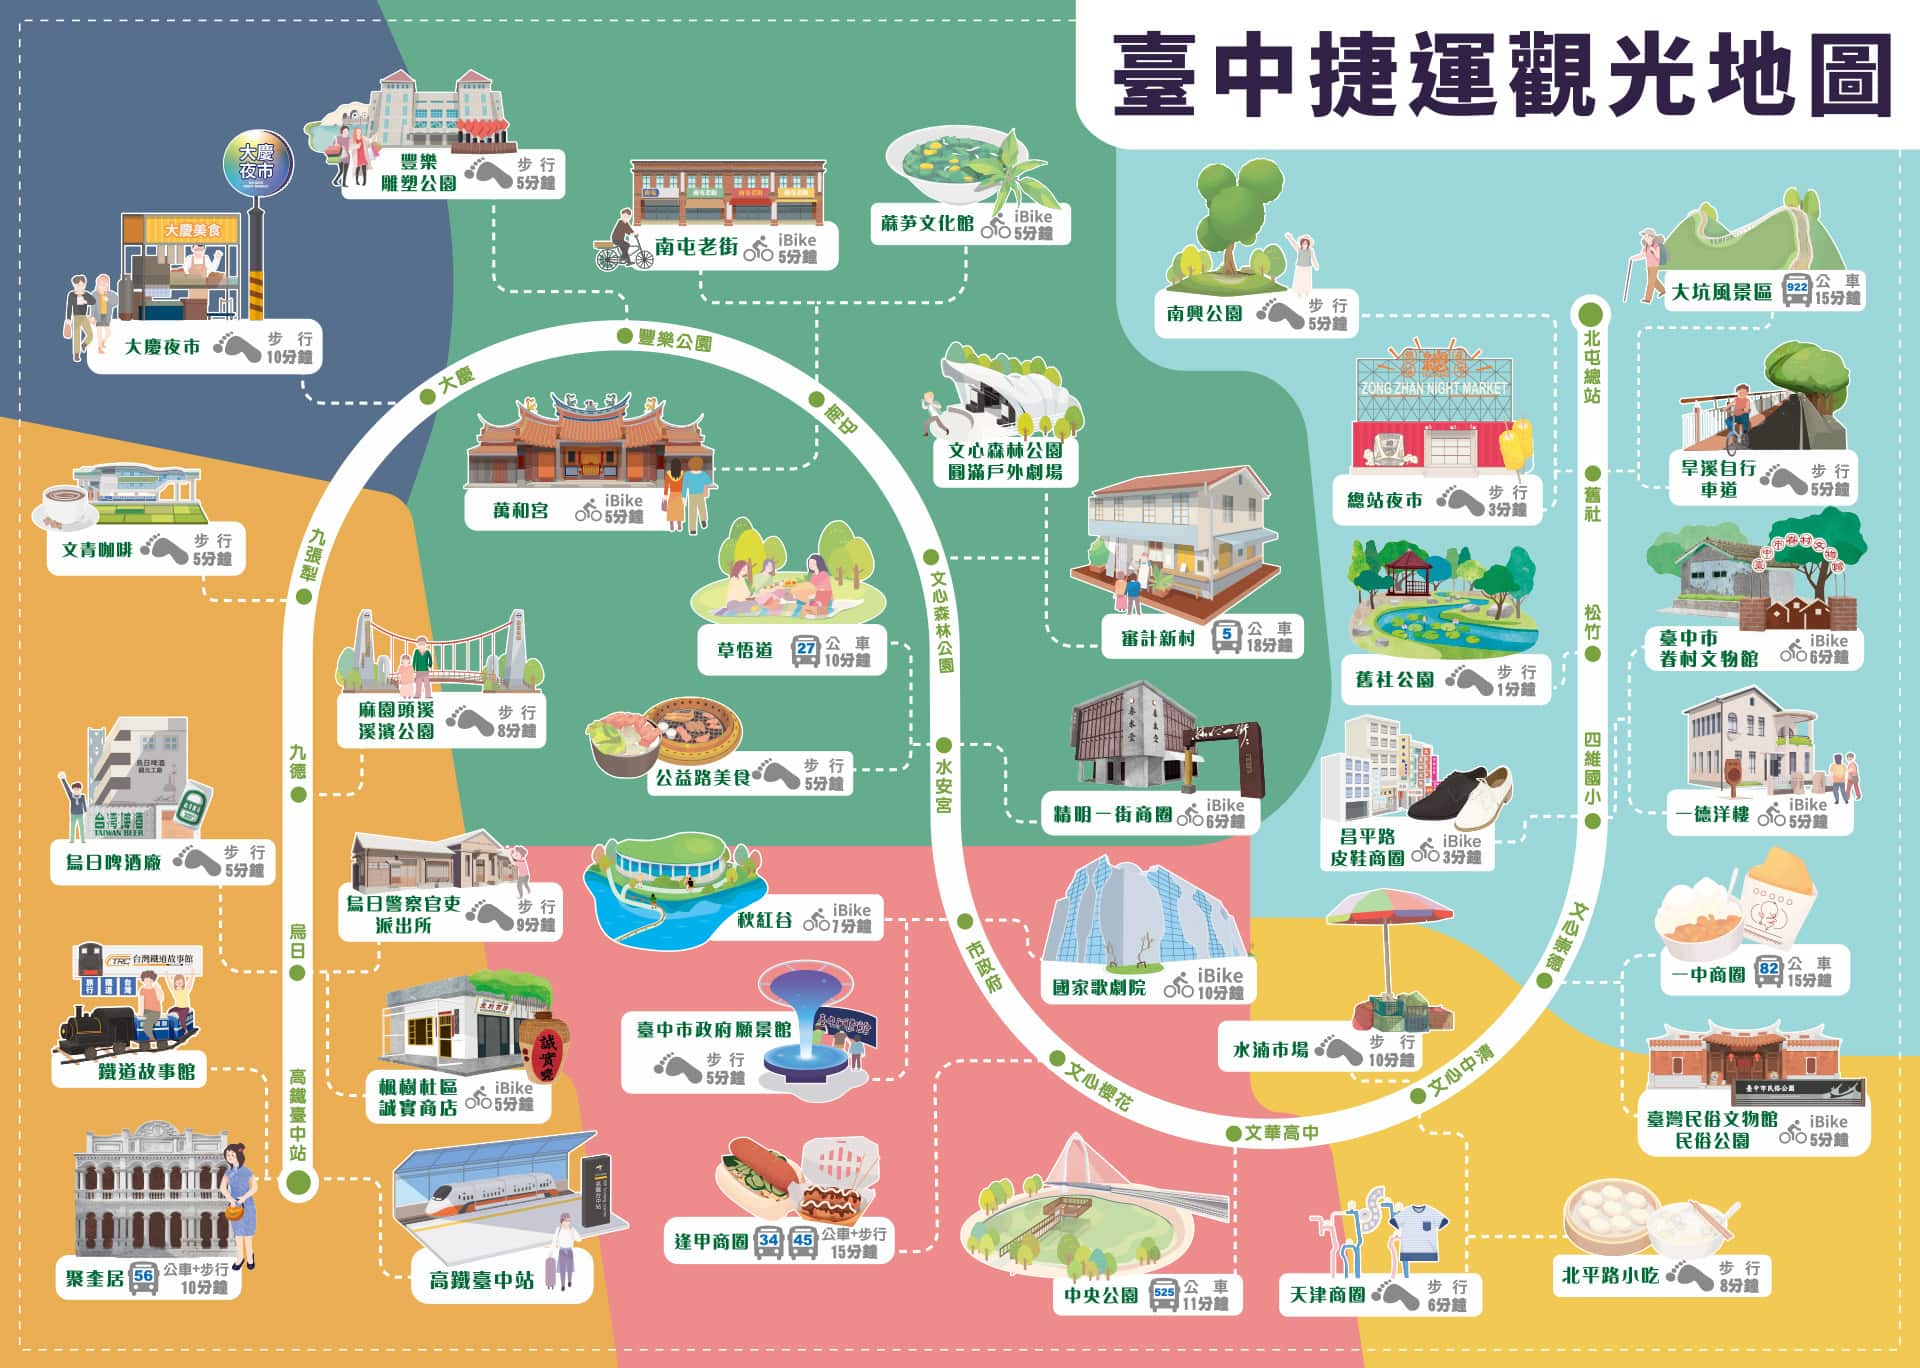 臺中捷運觀光地圖